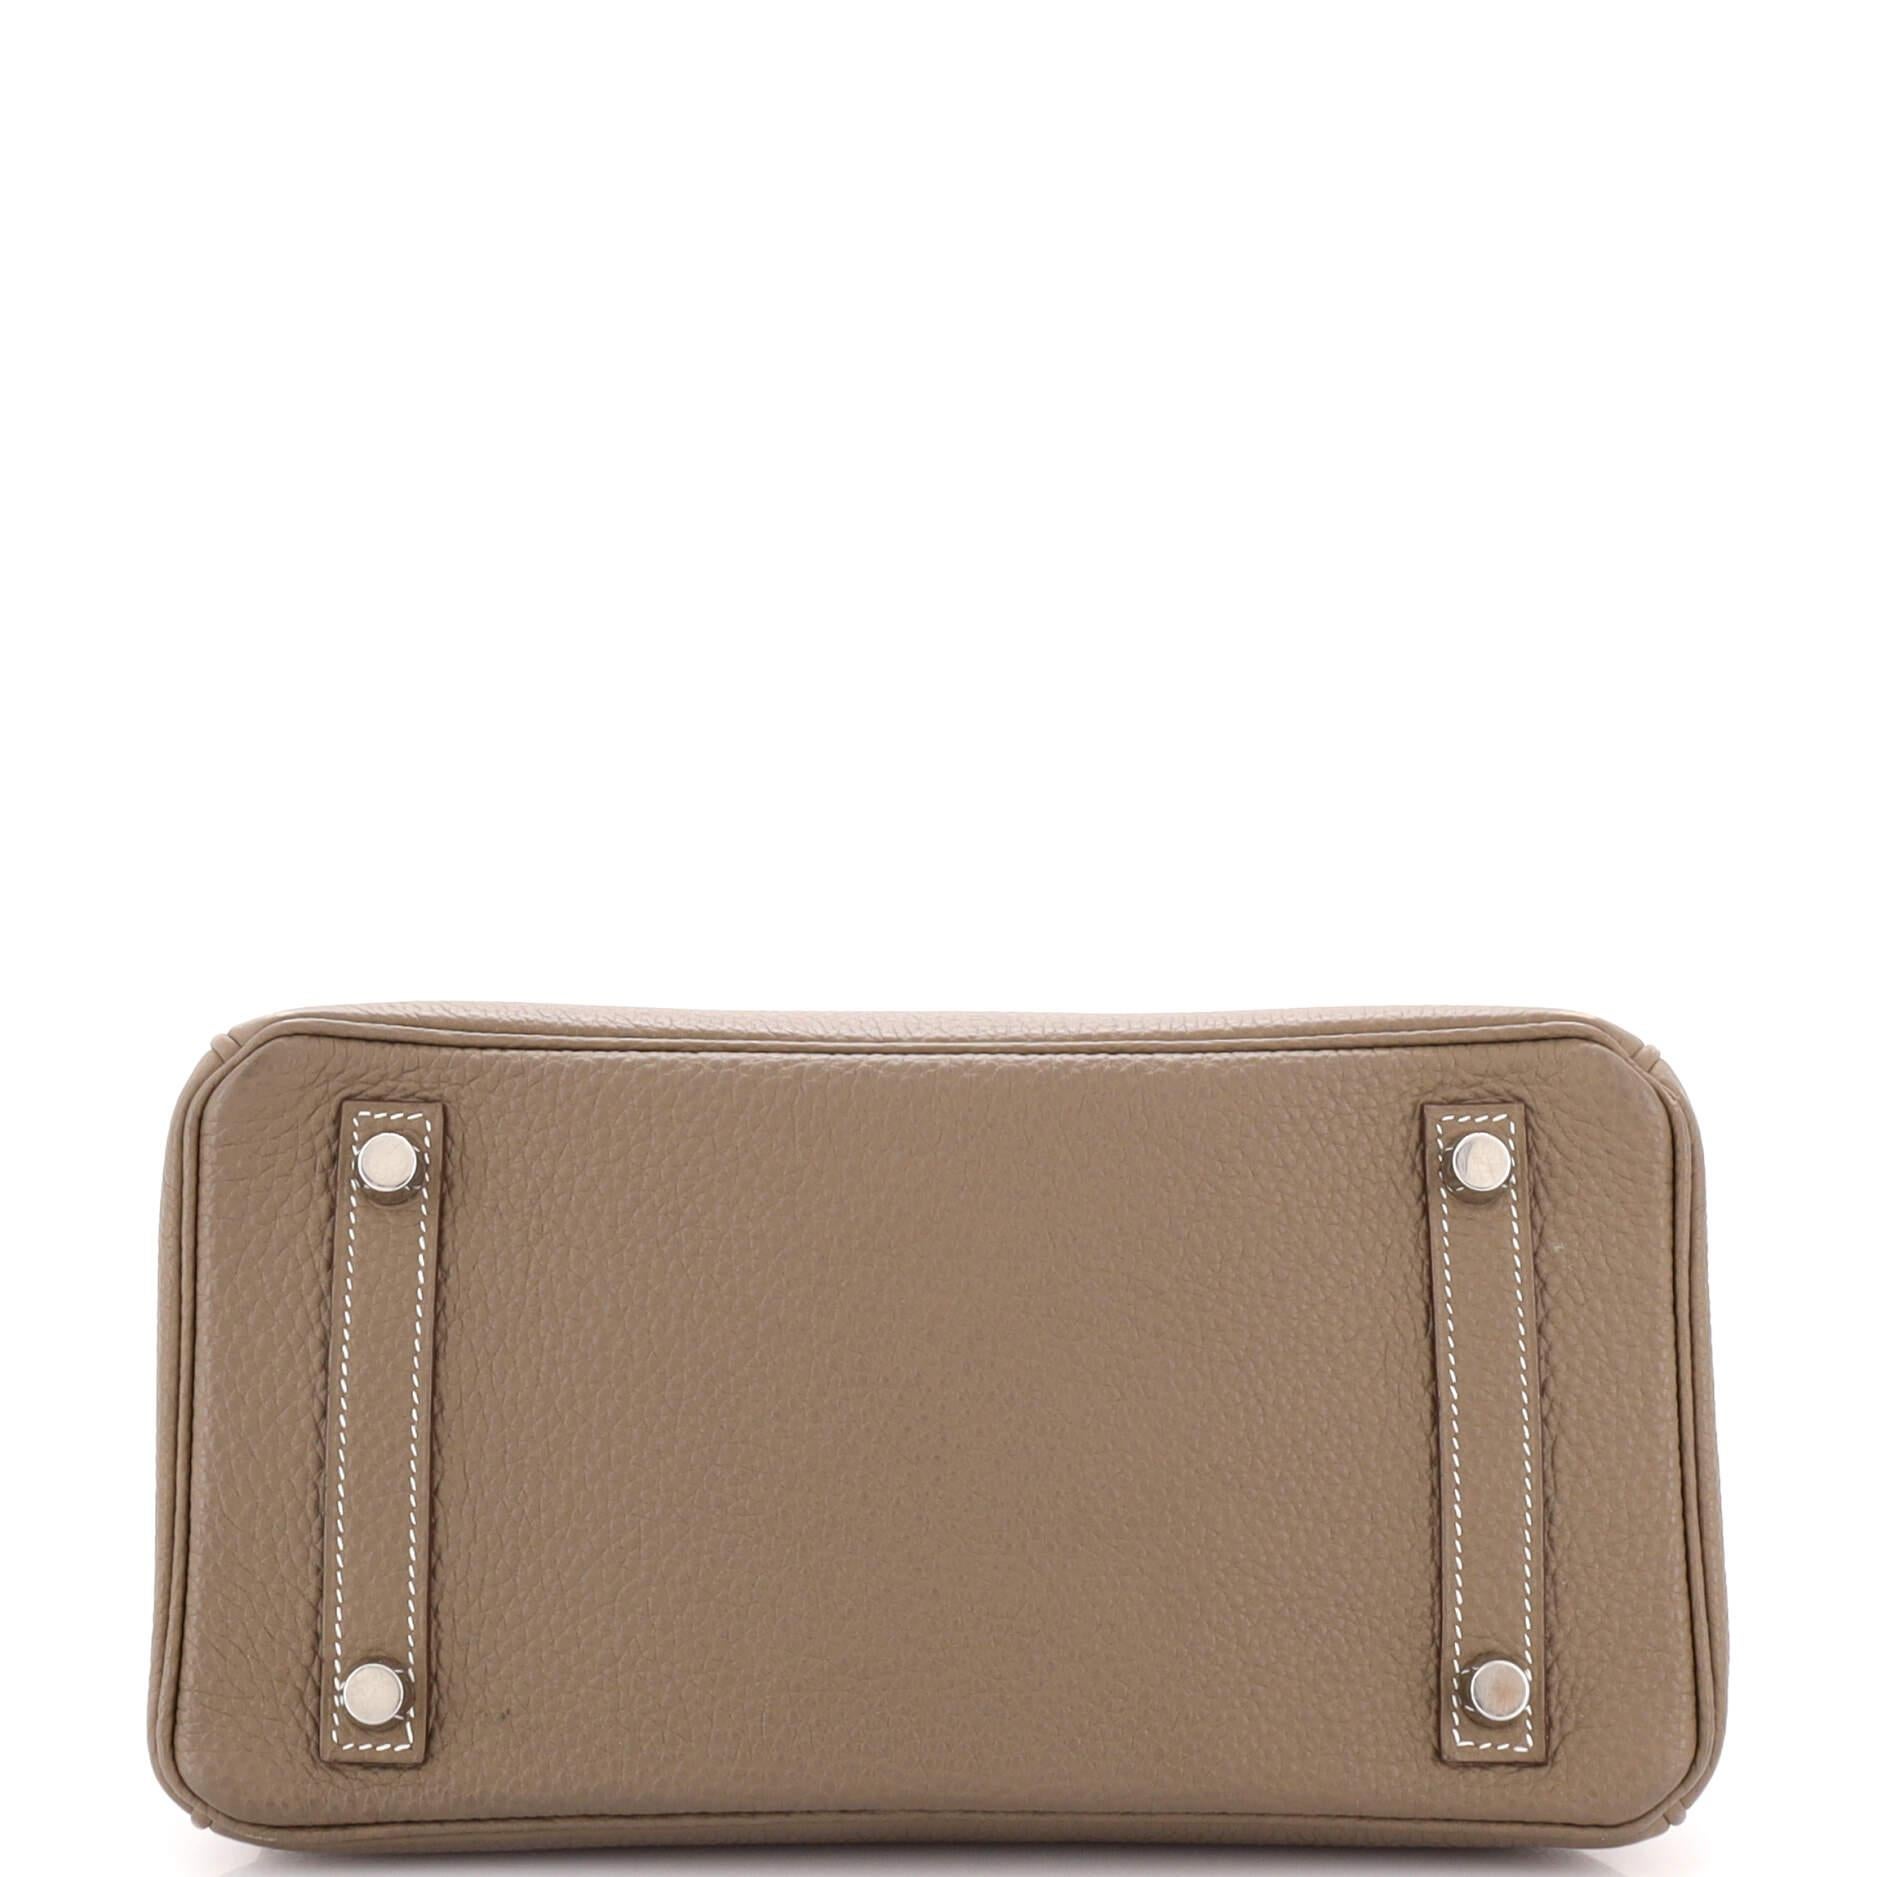 Hermes Birkin Handbag Grey Togo with Palladium Hardware 25 In Good Condition In NY, NY